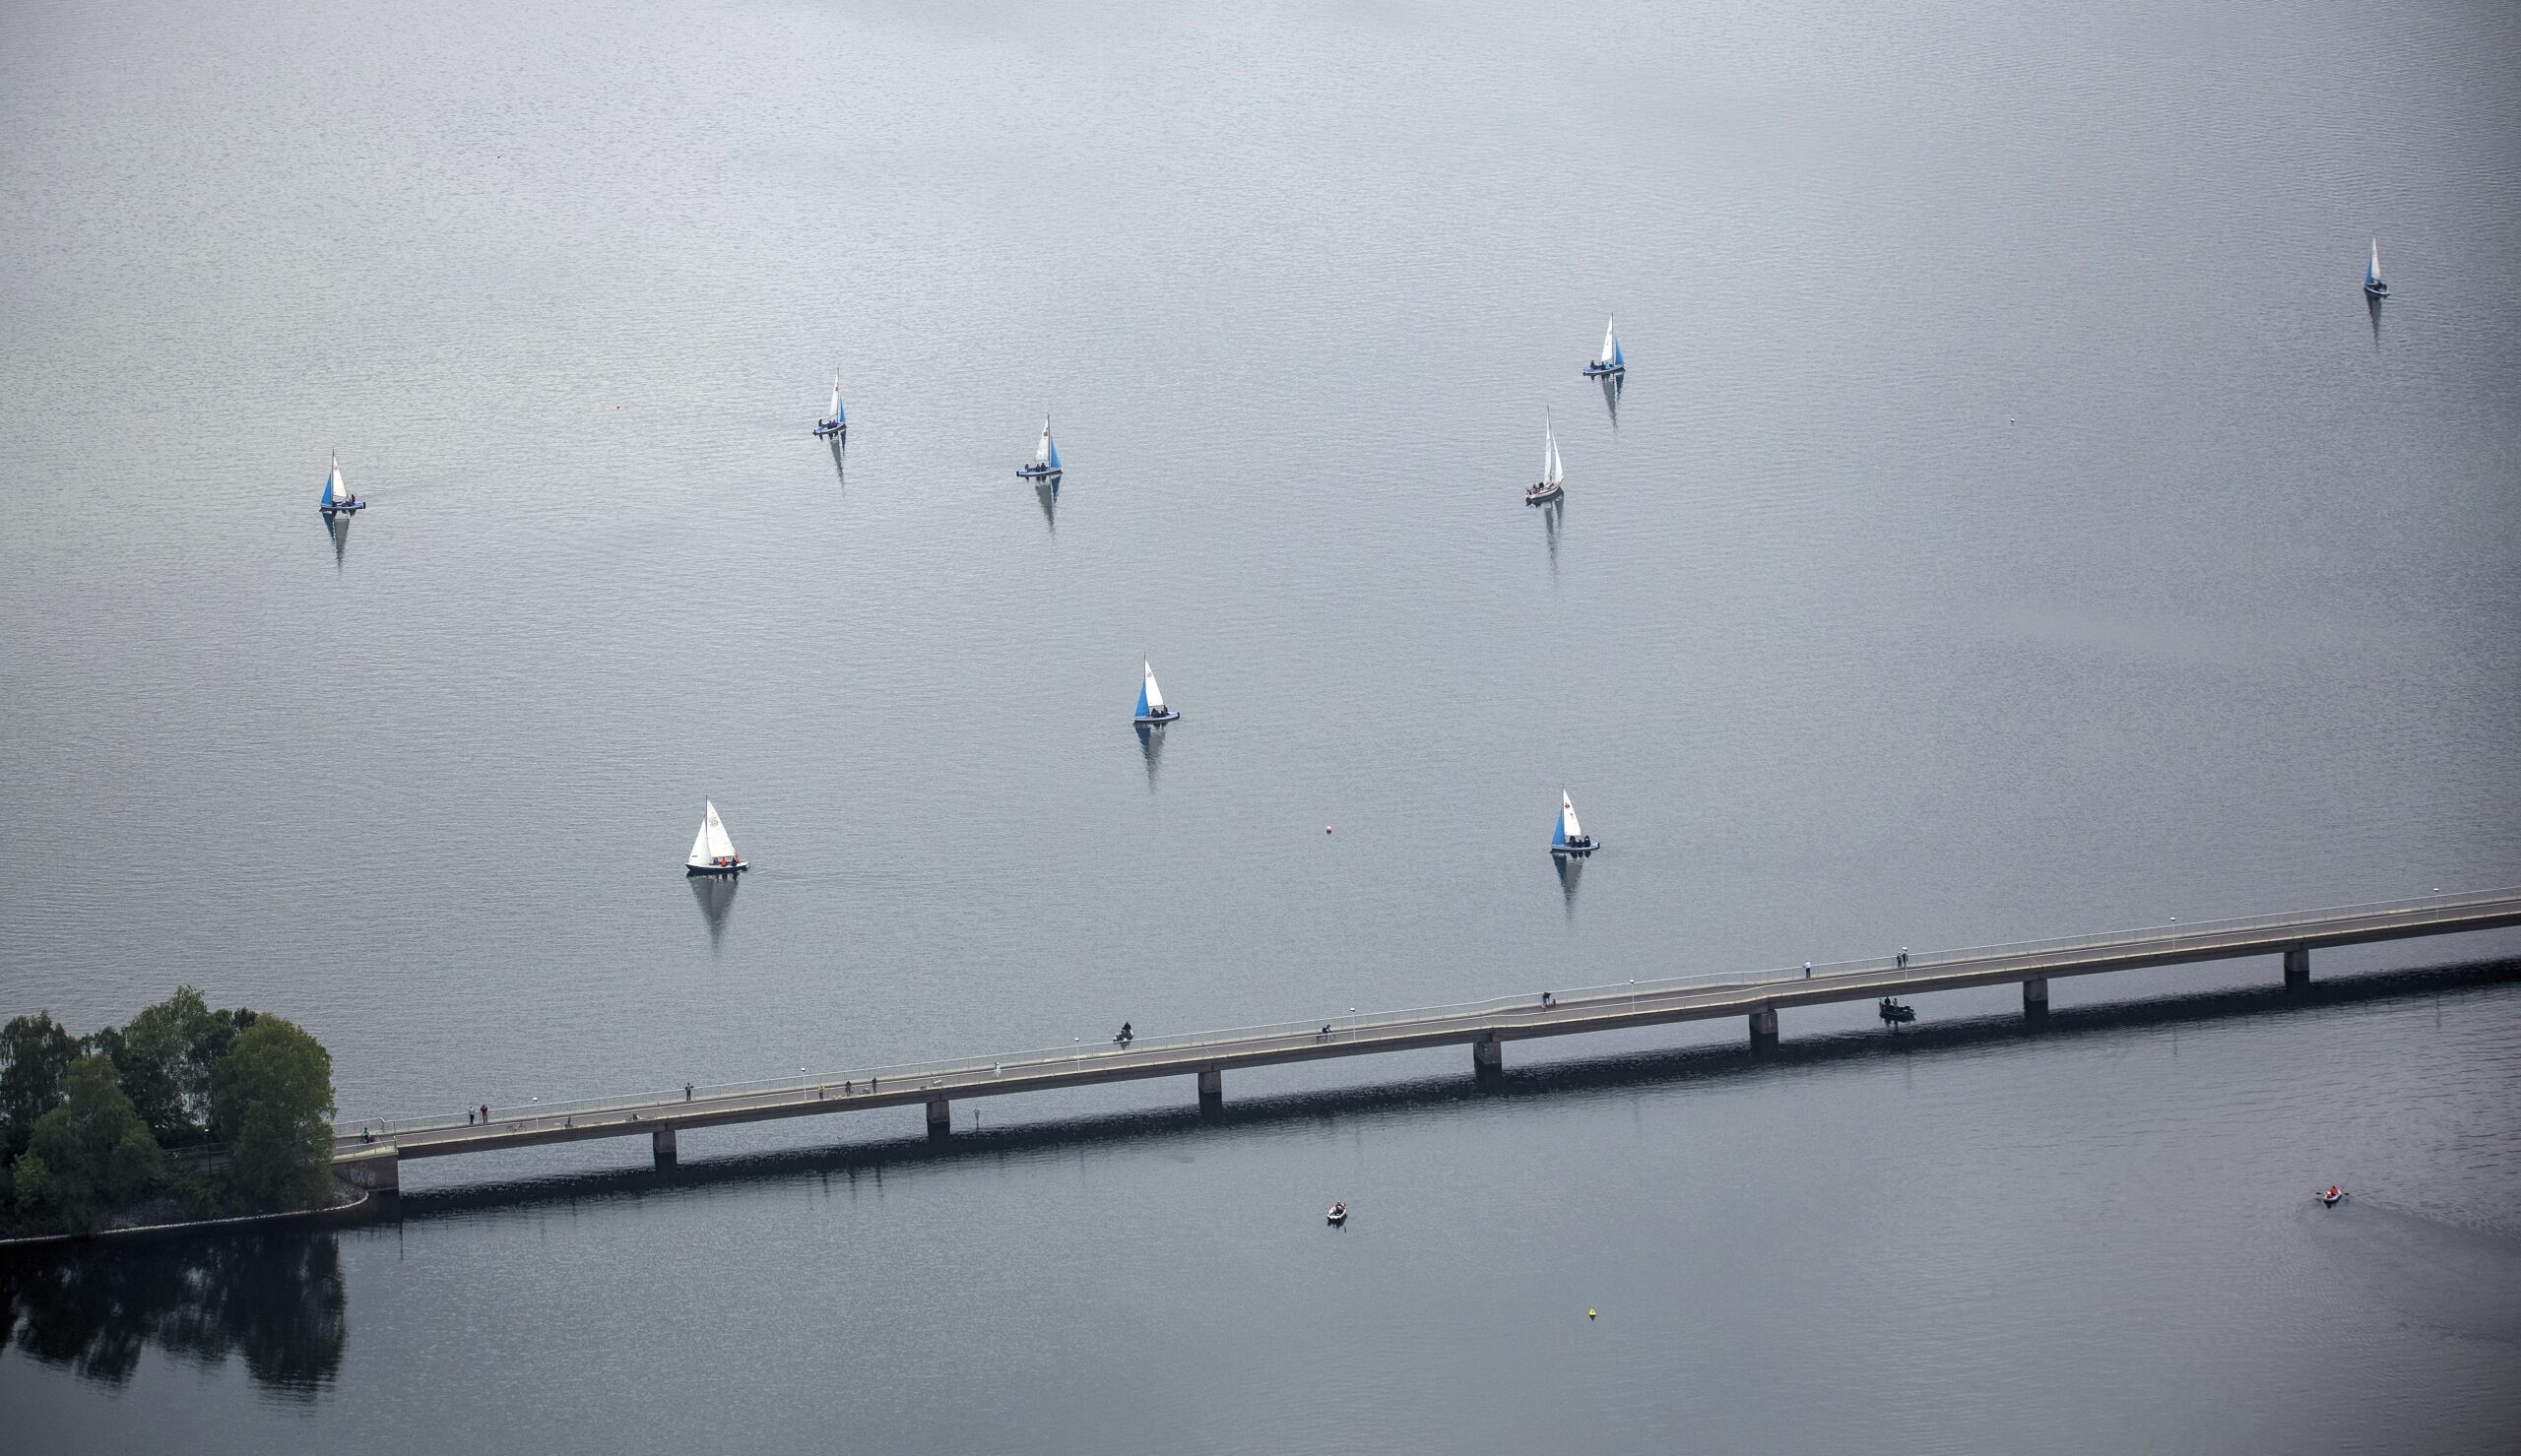 Segelboote an der Fussgängerbrücke, Delecke,  Möhnesee, Sauerland, Möhnesee, Nordrhein-Westfalen, Deutschland